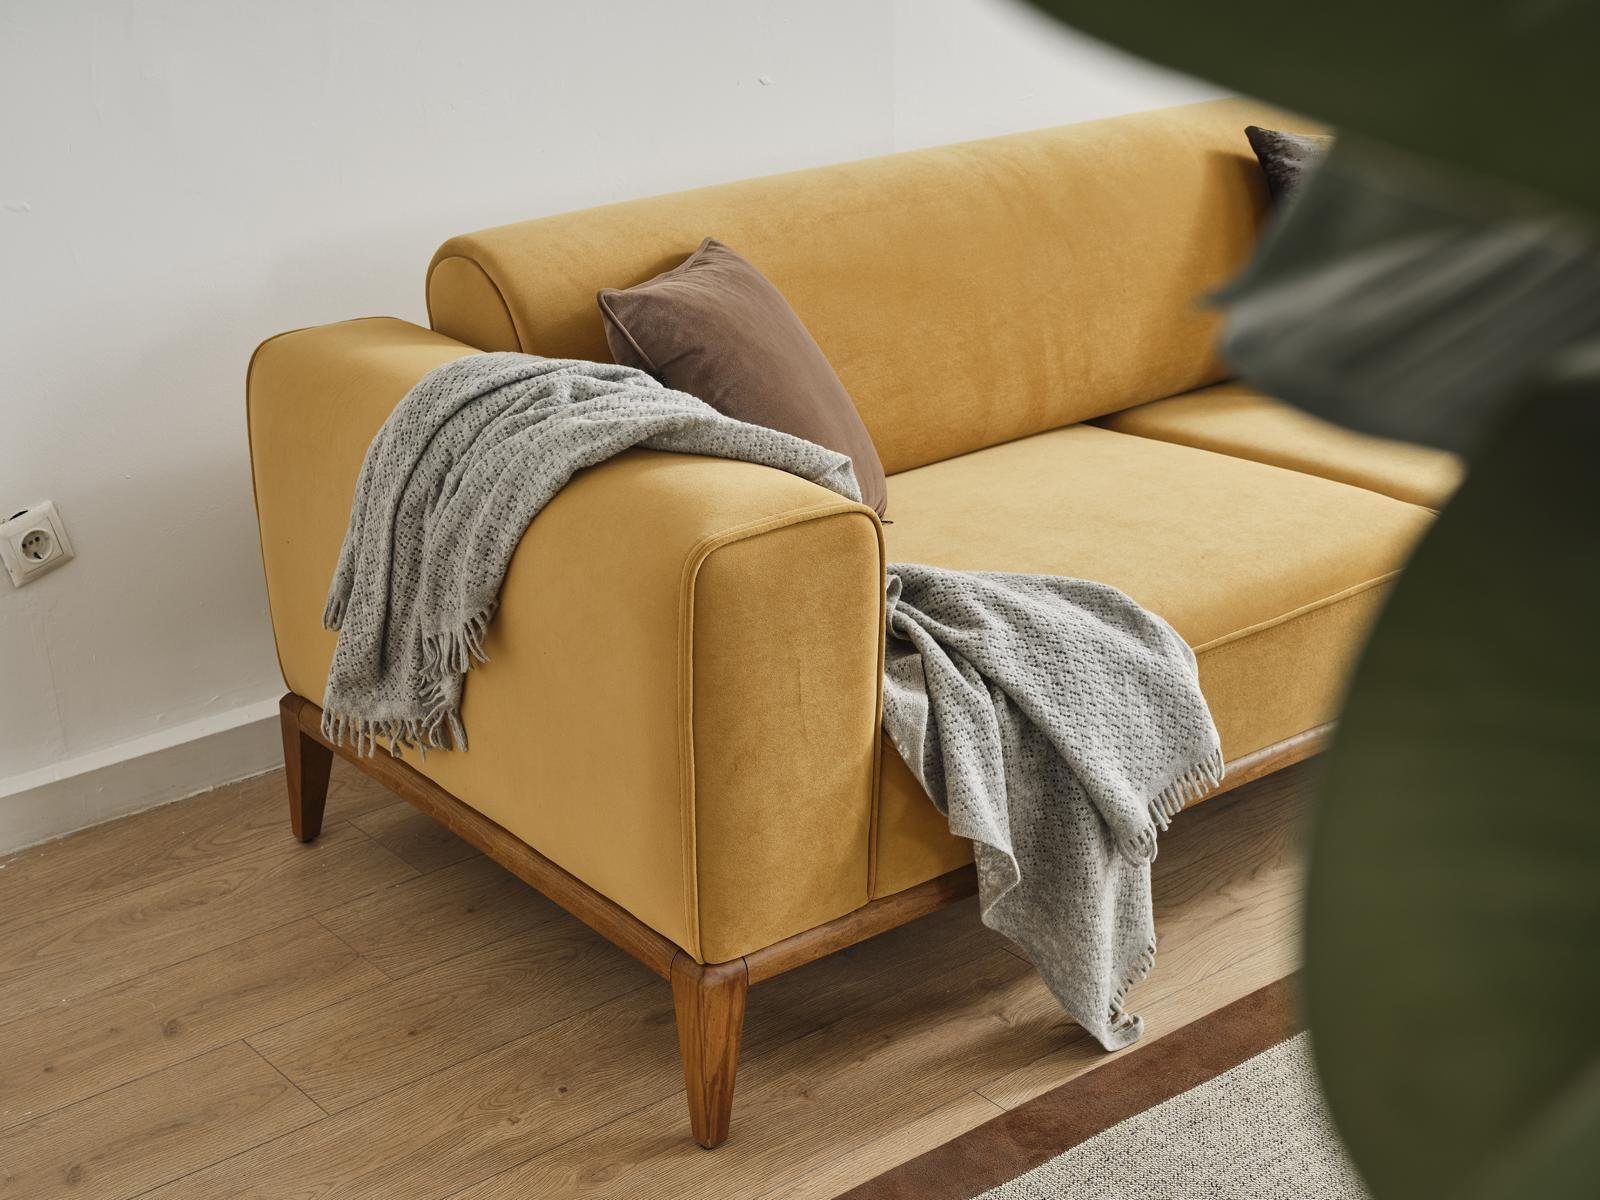 Sofas Sofa Sitzer Sofa Gelb in 1 Modern, 3 Made Europe Luxus Dreisitzer Stoff JVmoebel Wohnzimmer Teile,